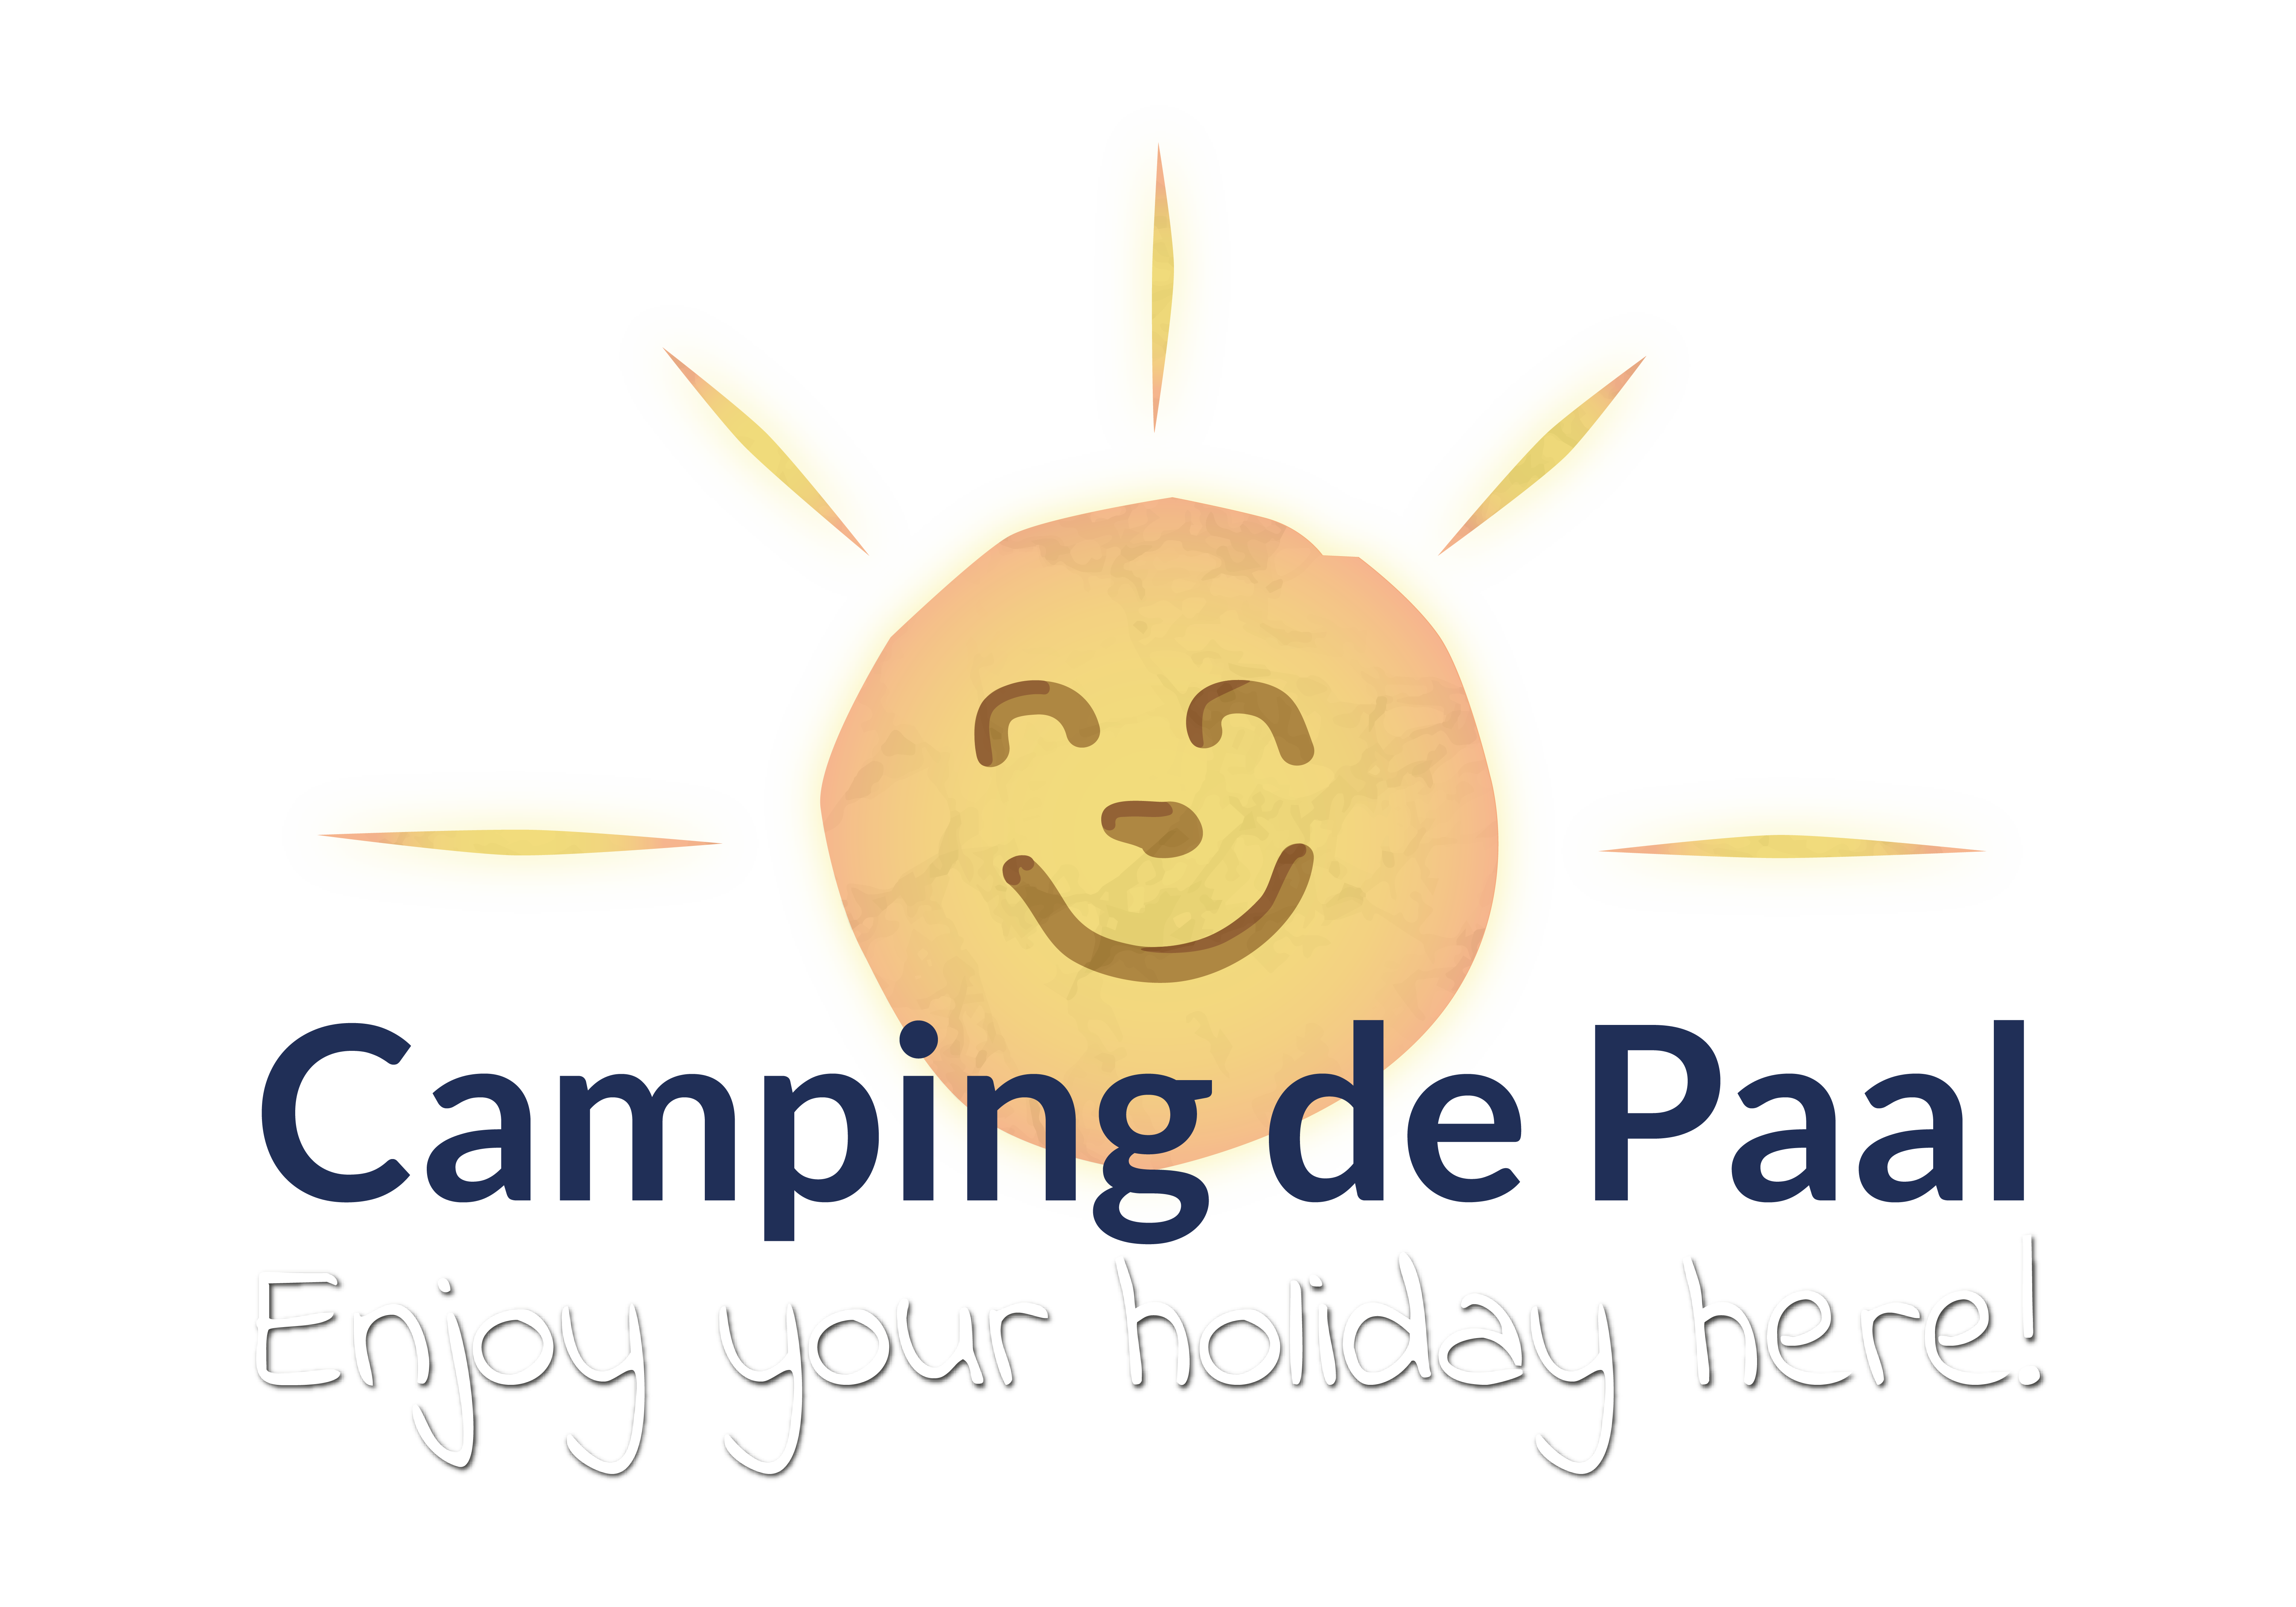 Camping de Paal